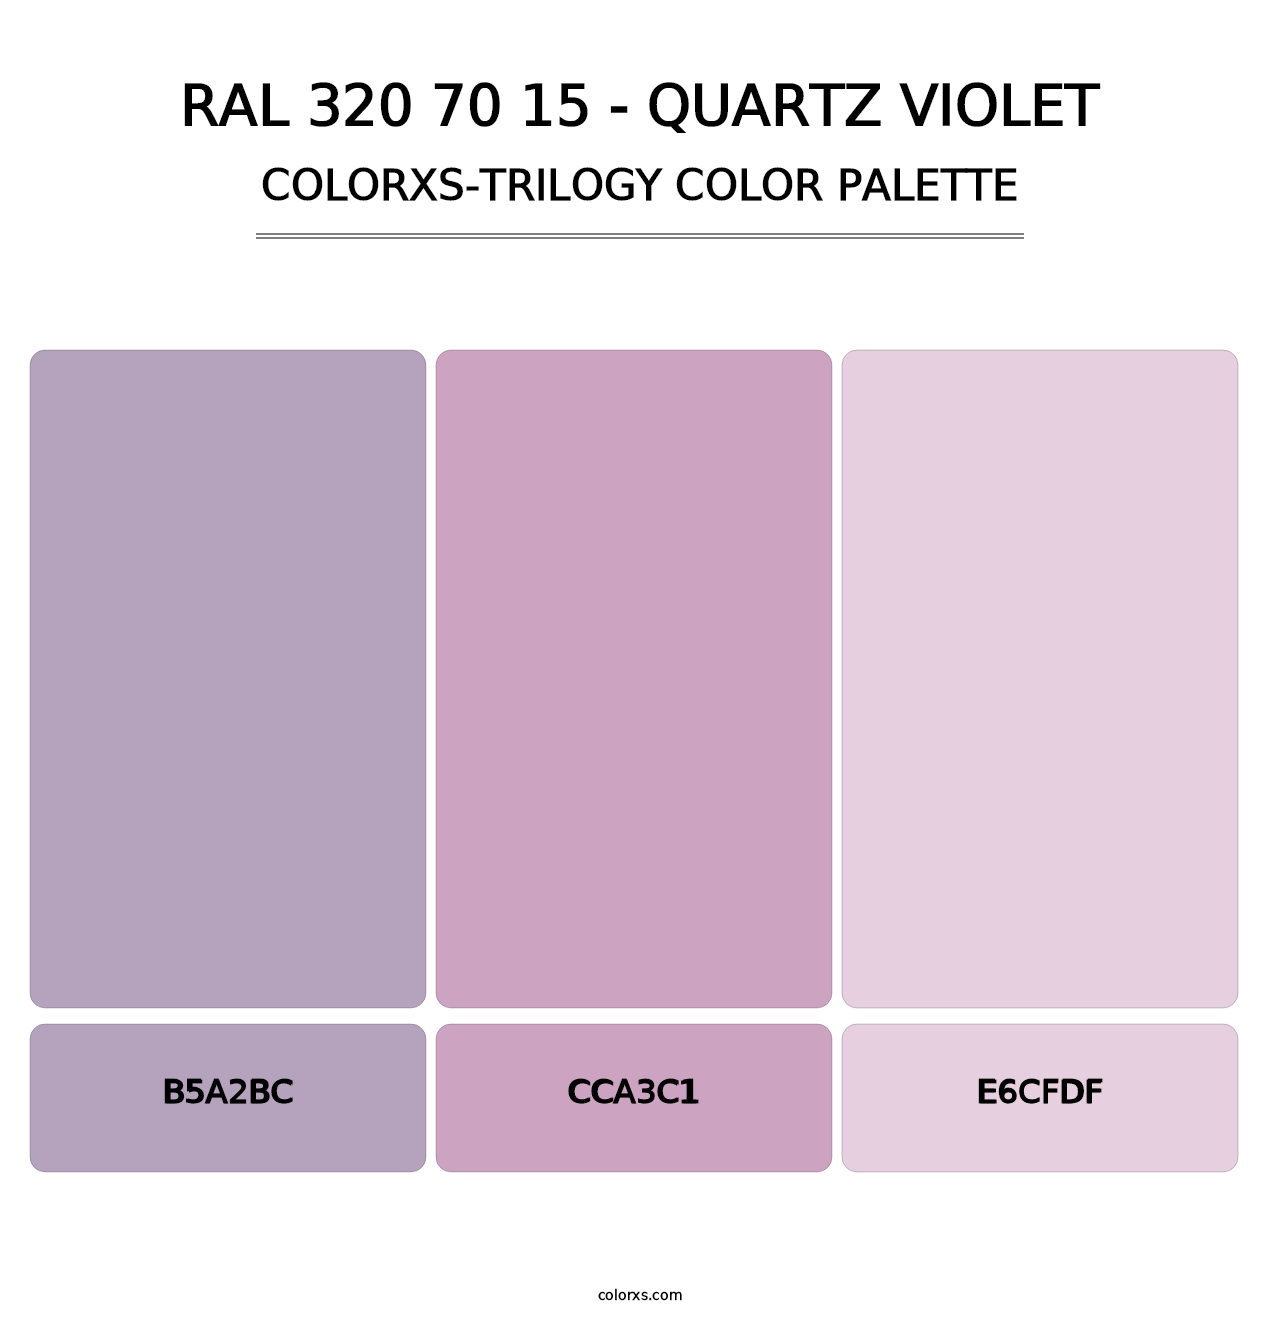 RAL 320 70 15 - Quartz Violet - Colorxs Trilogy Palette